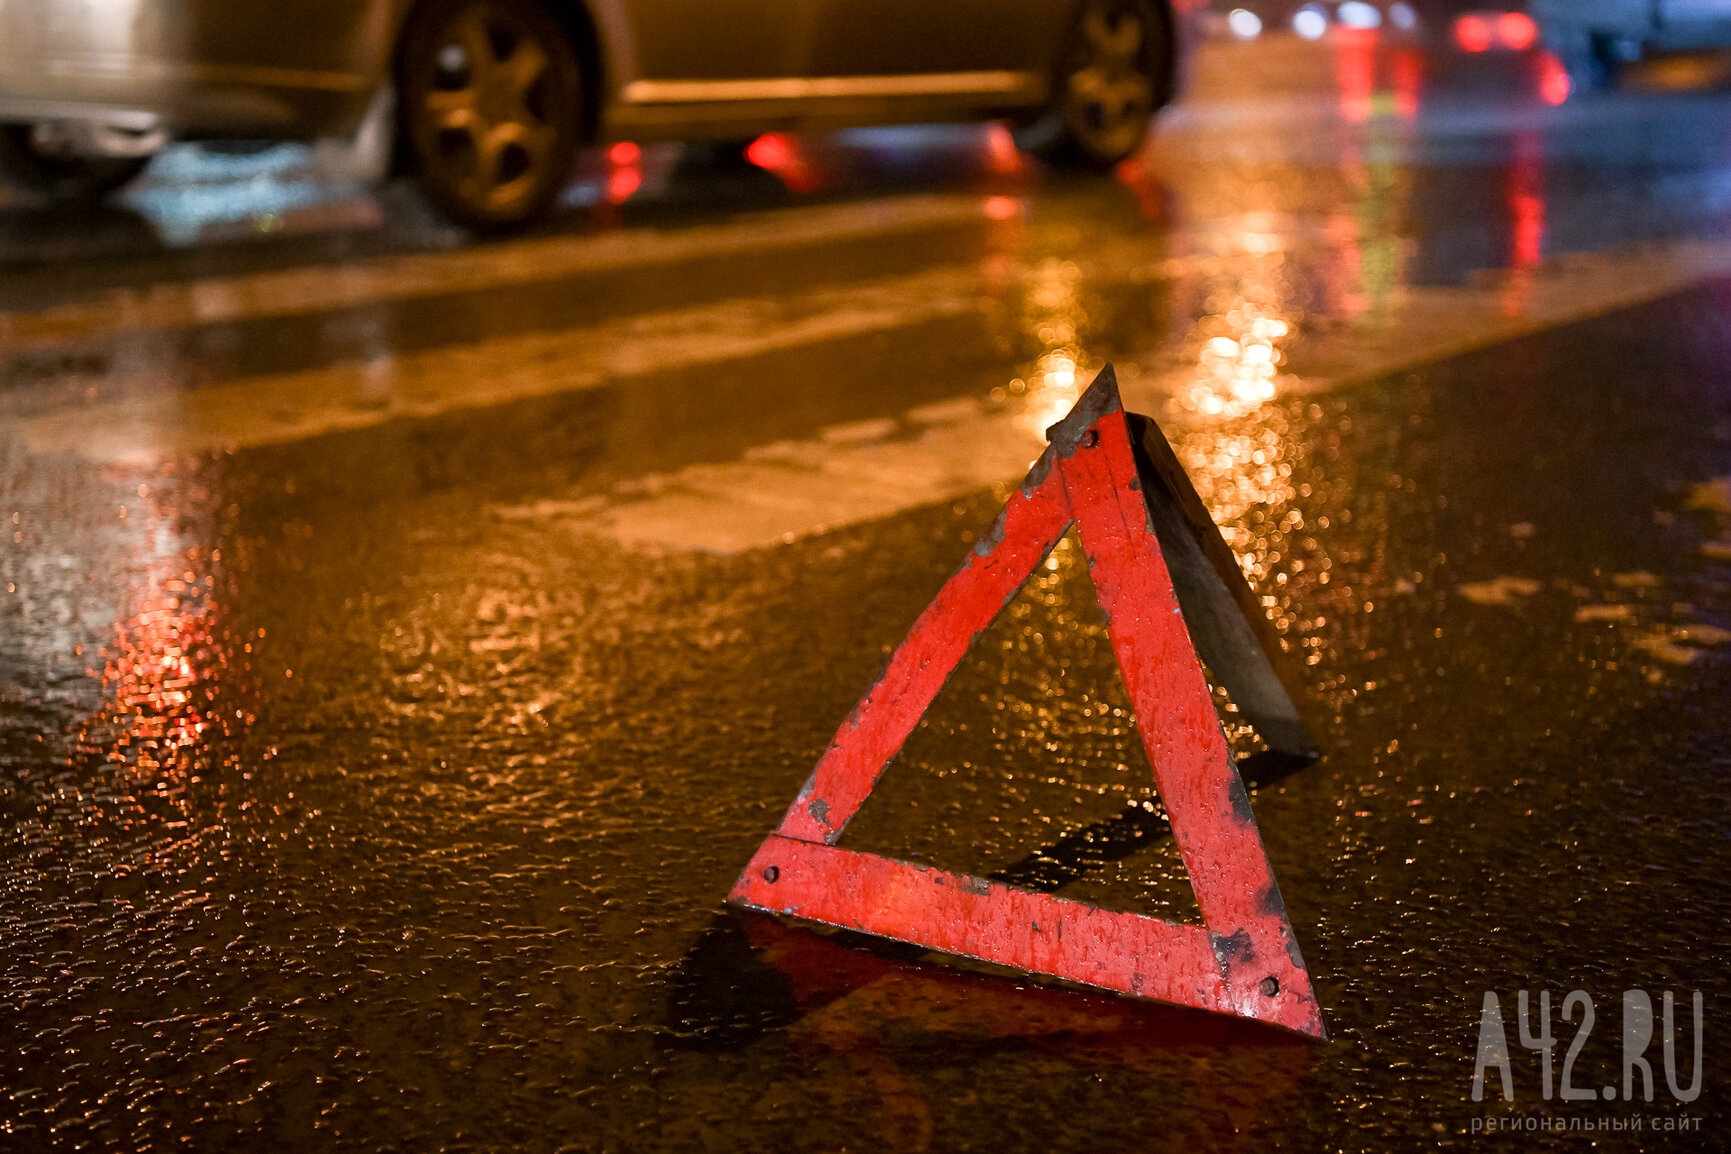 Соцсети: автомобили получили сильные повреждения в результате серьёзной аварии в Новокузнецке